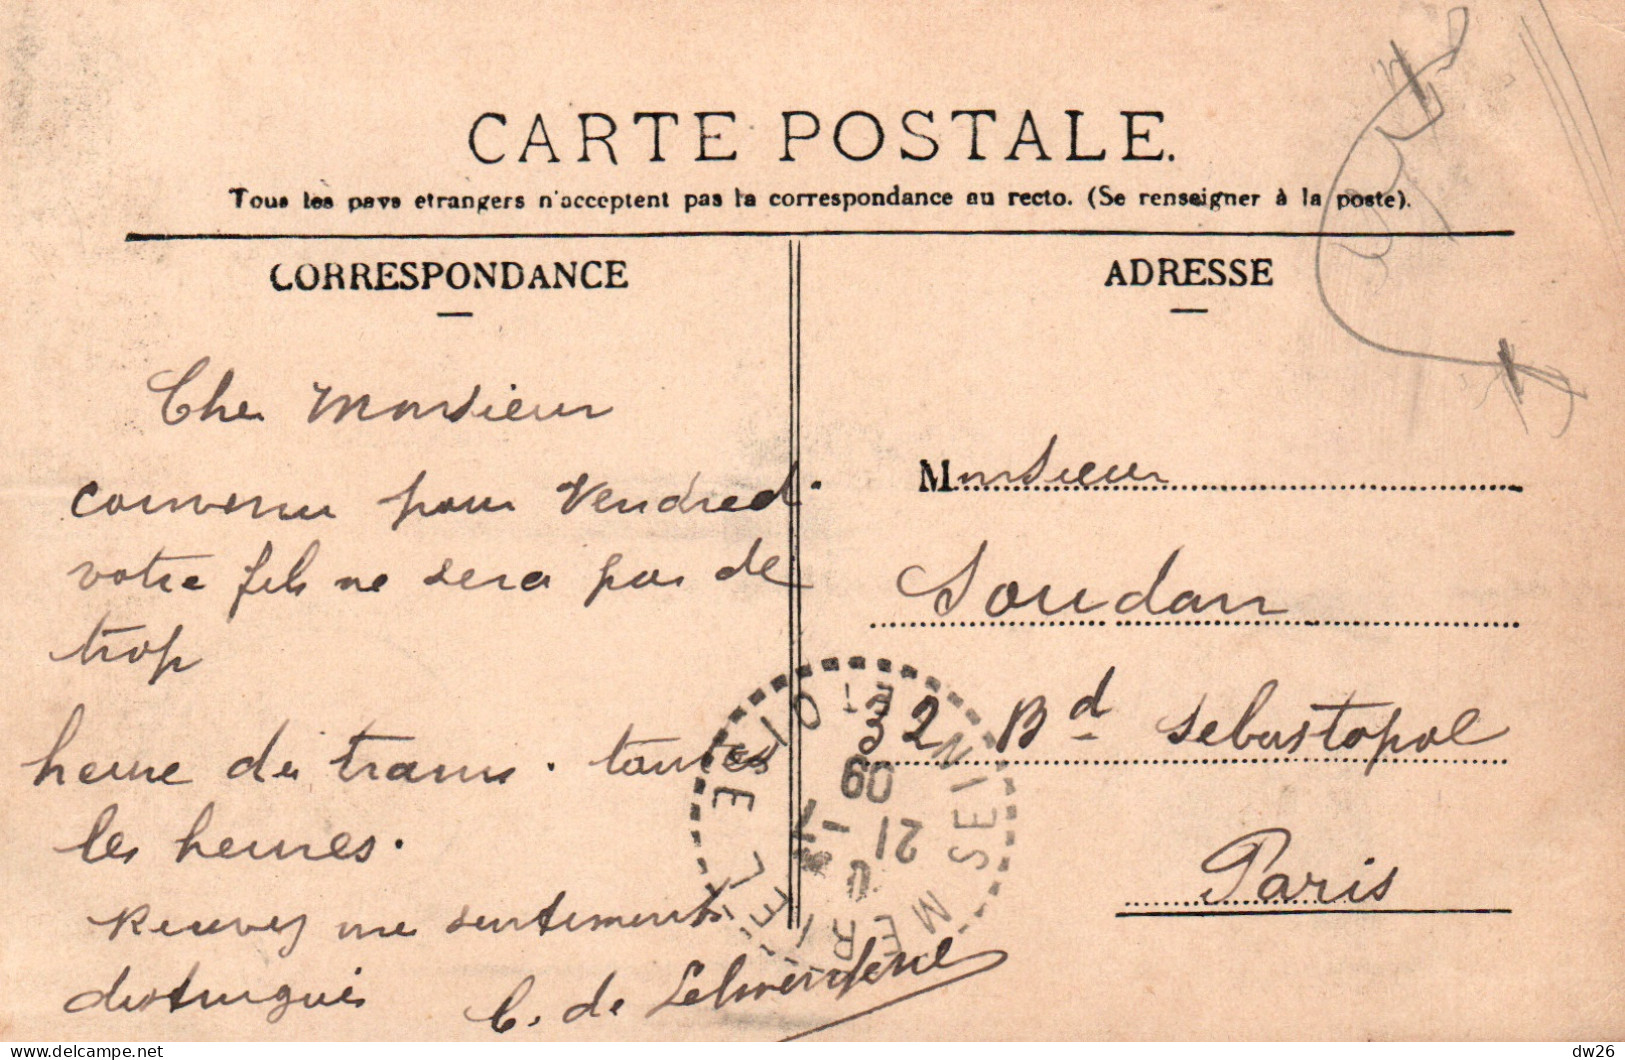 Mériel (Seine-et-Oise, 95) Vue Générale Prise De La Voie Ferrée Carte De 1909 - Meriel